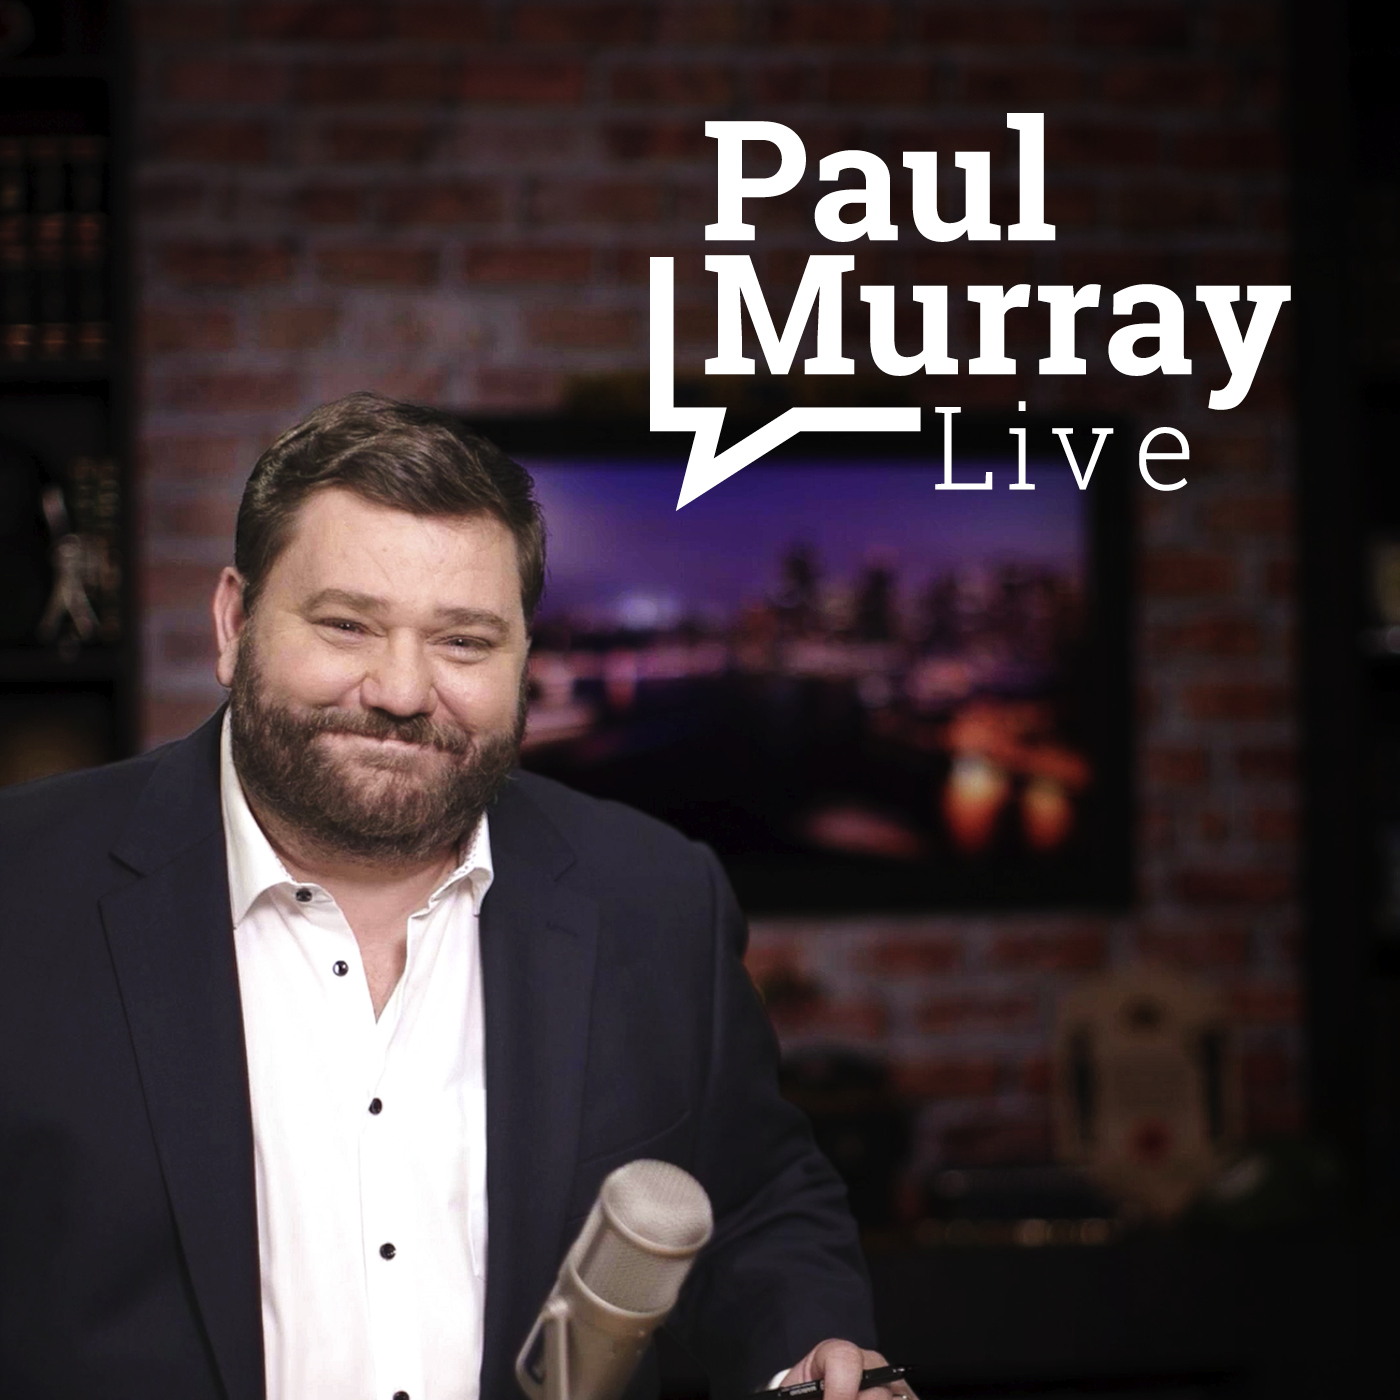 Paul Murray Live, Thursday 22 September